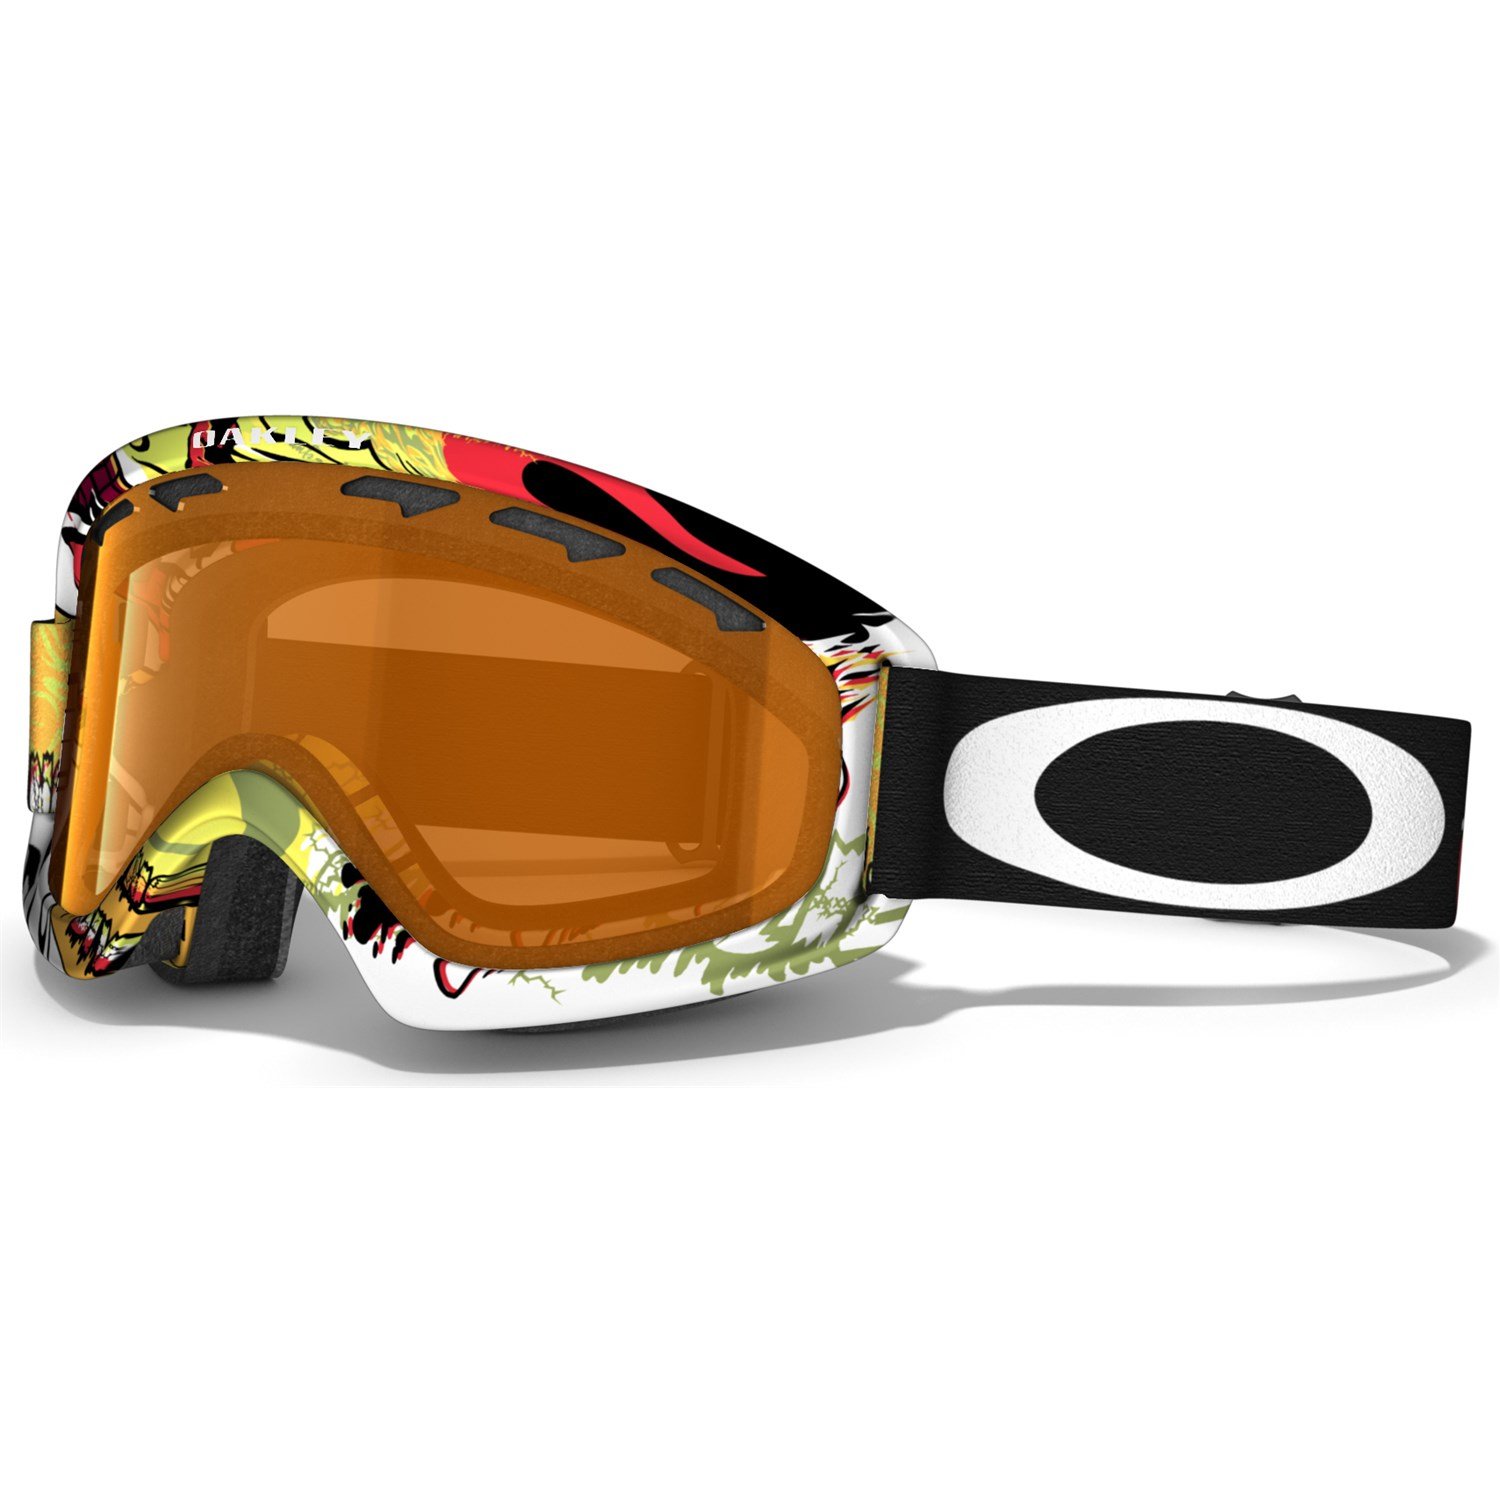 oakley o2 xs ski goggles